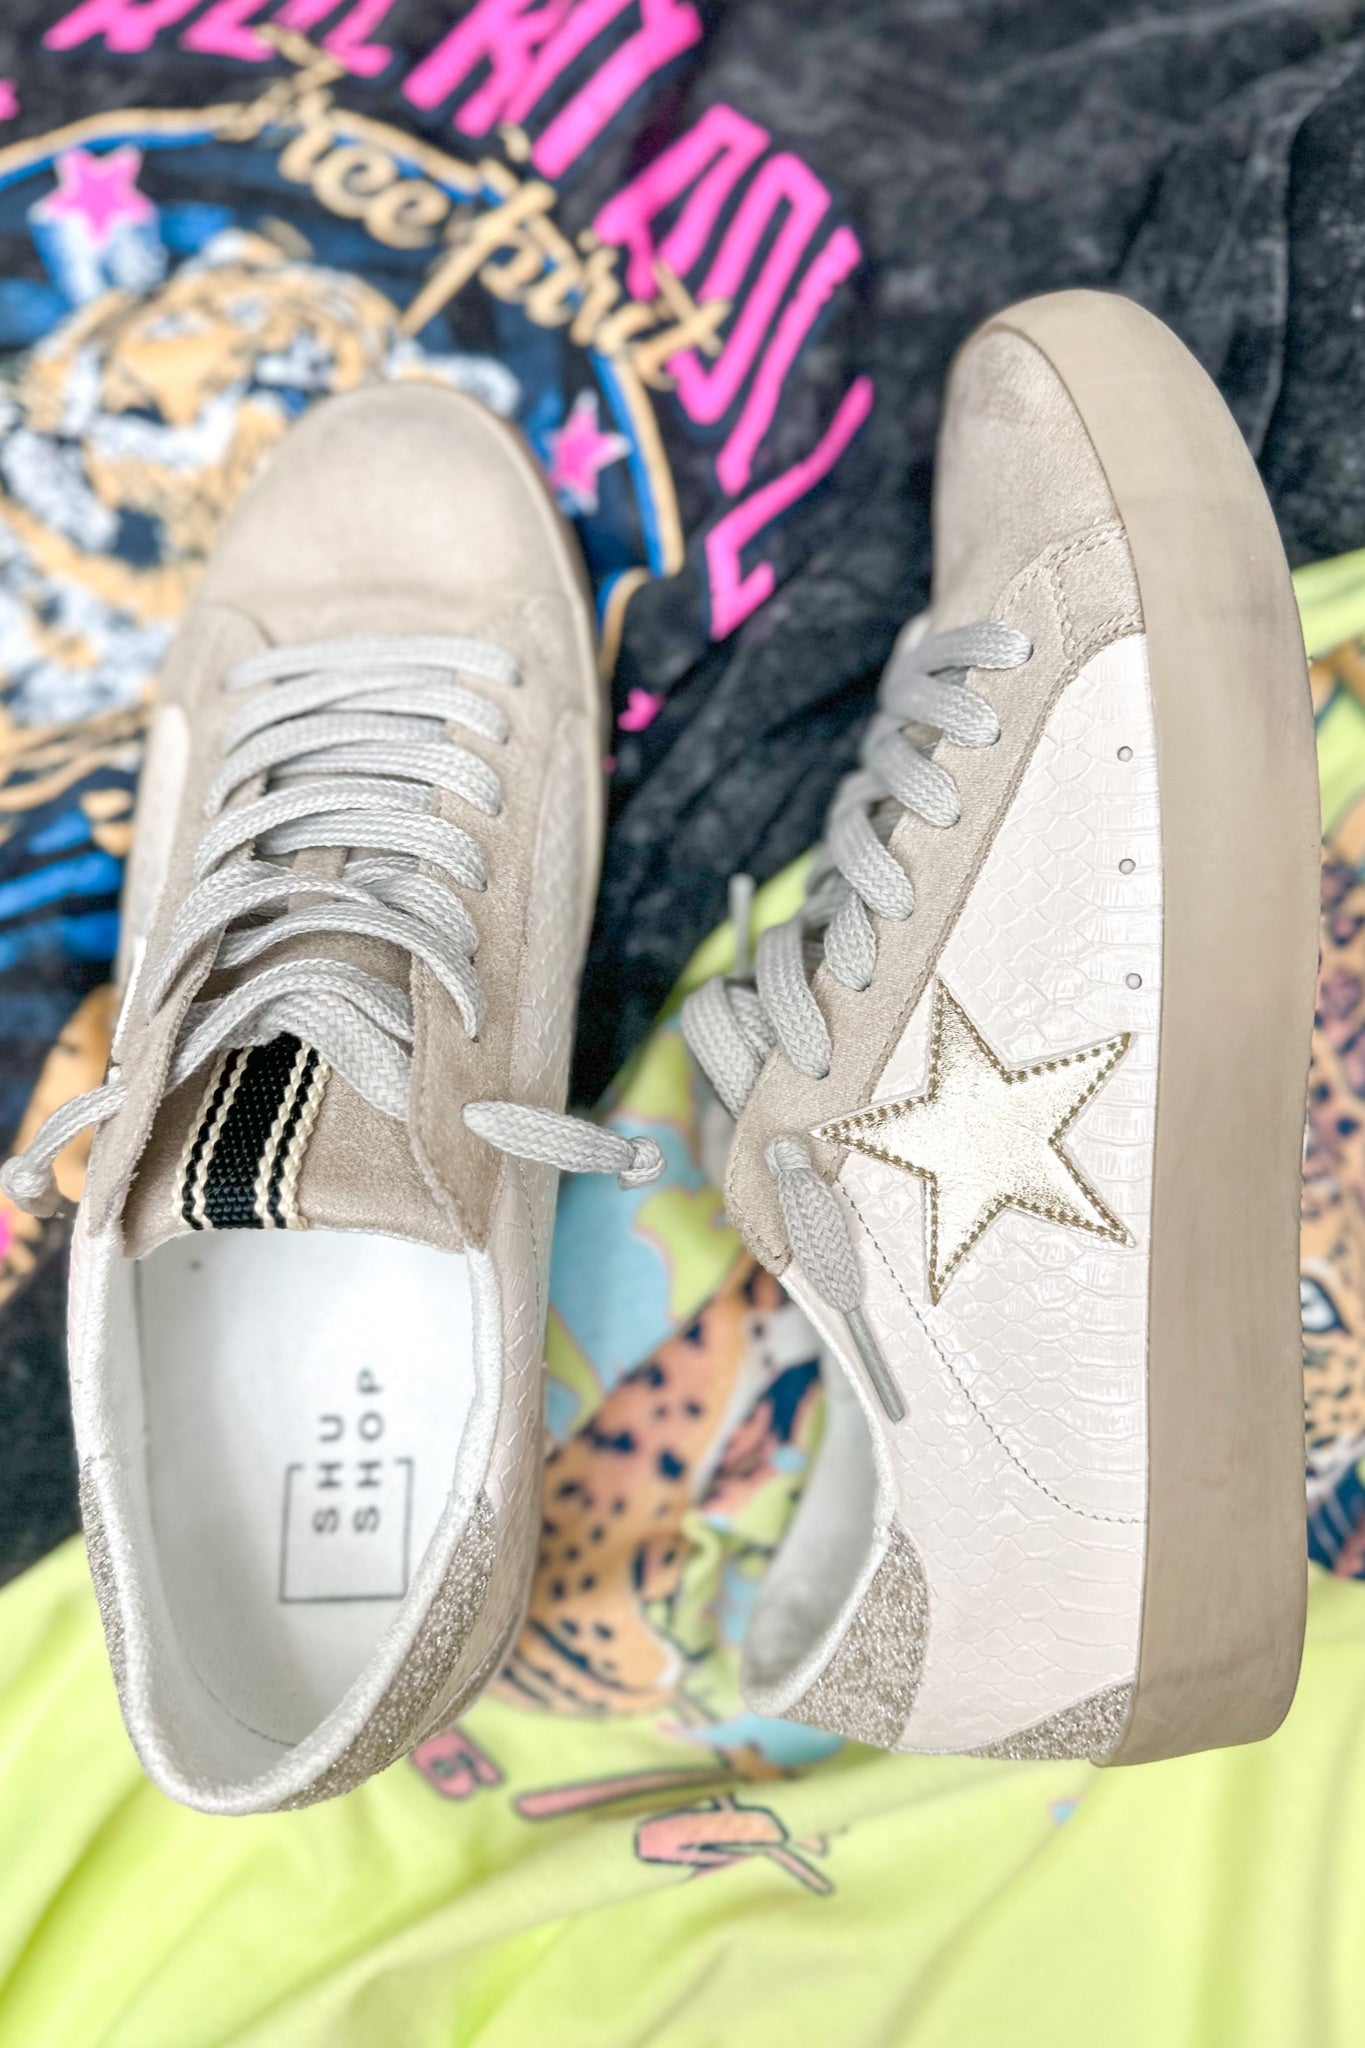 The Paula Silver Glitter Heel Neutral ShuShop Sneakers